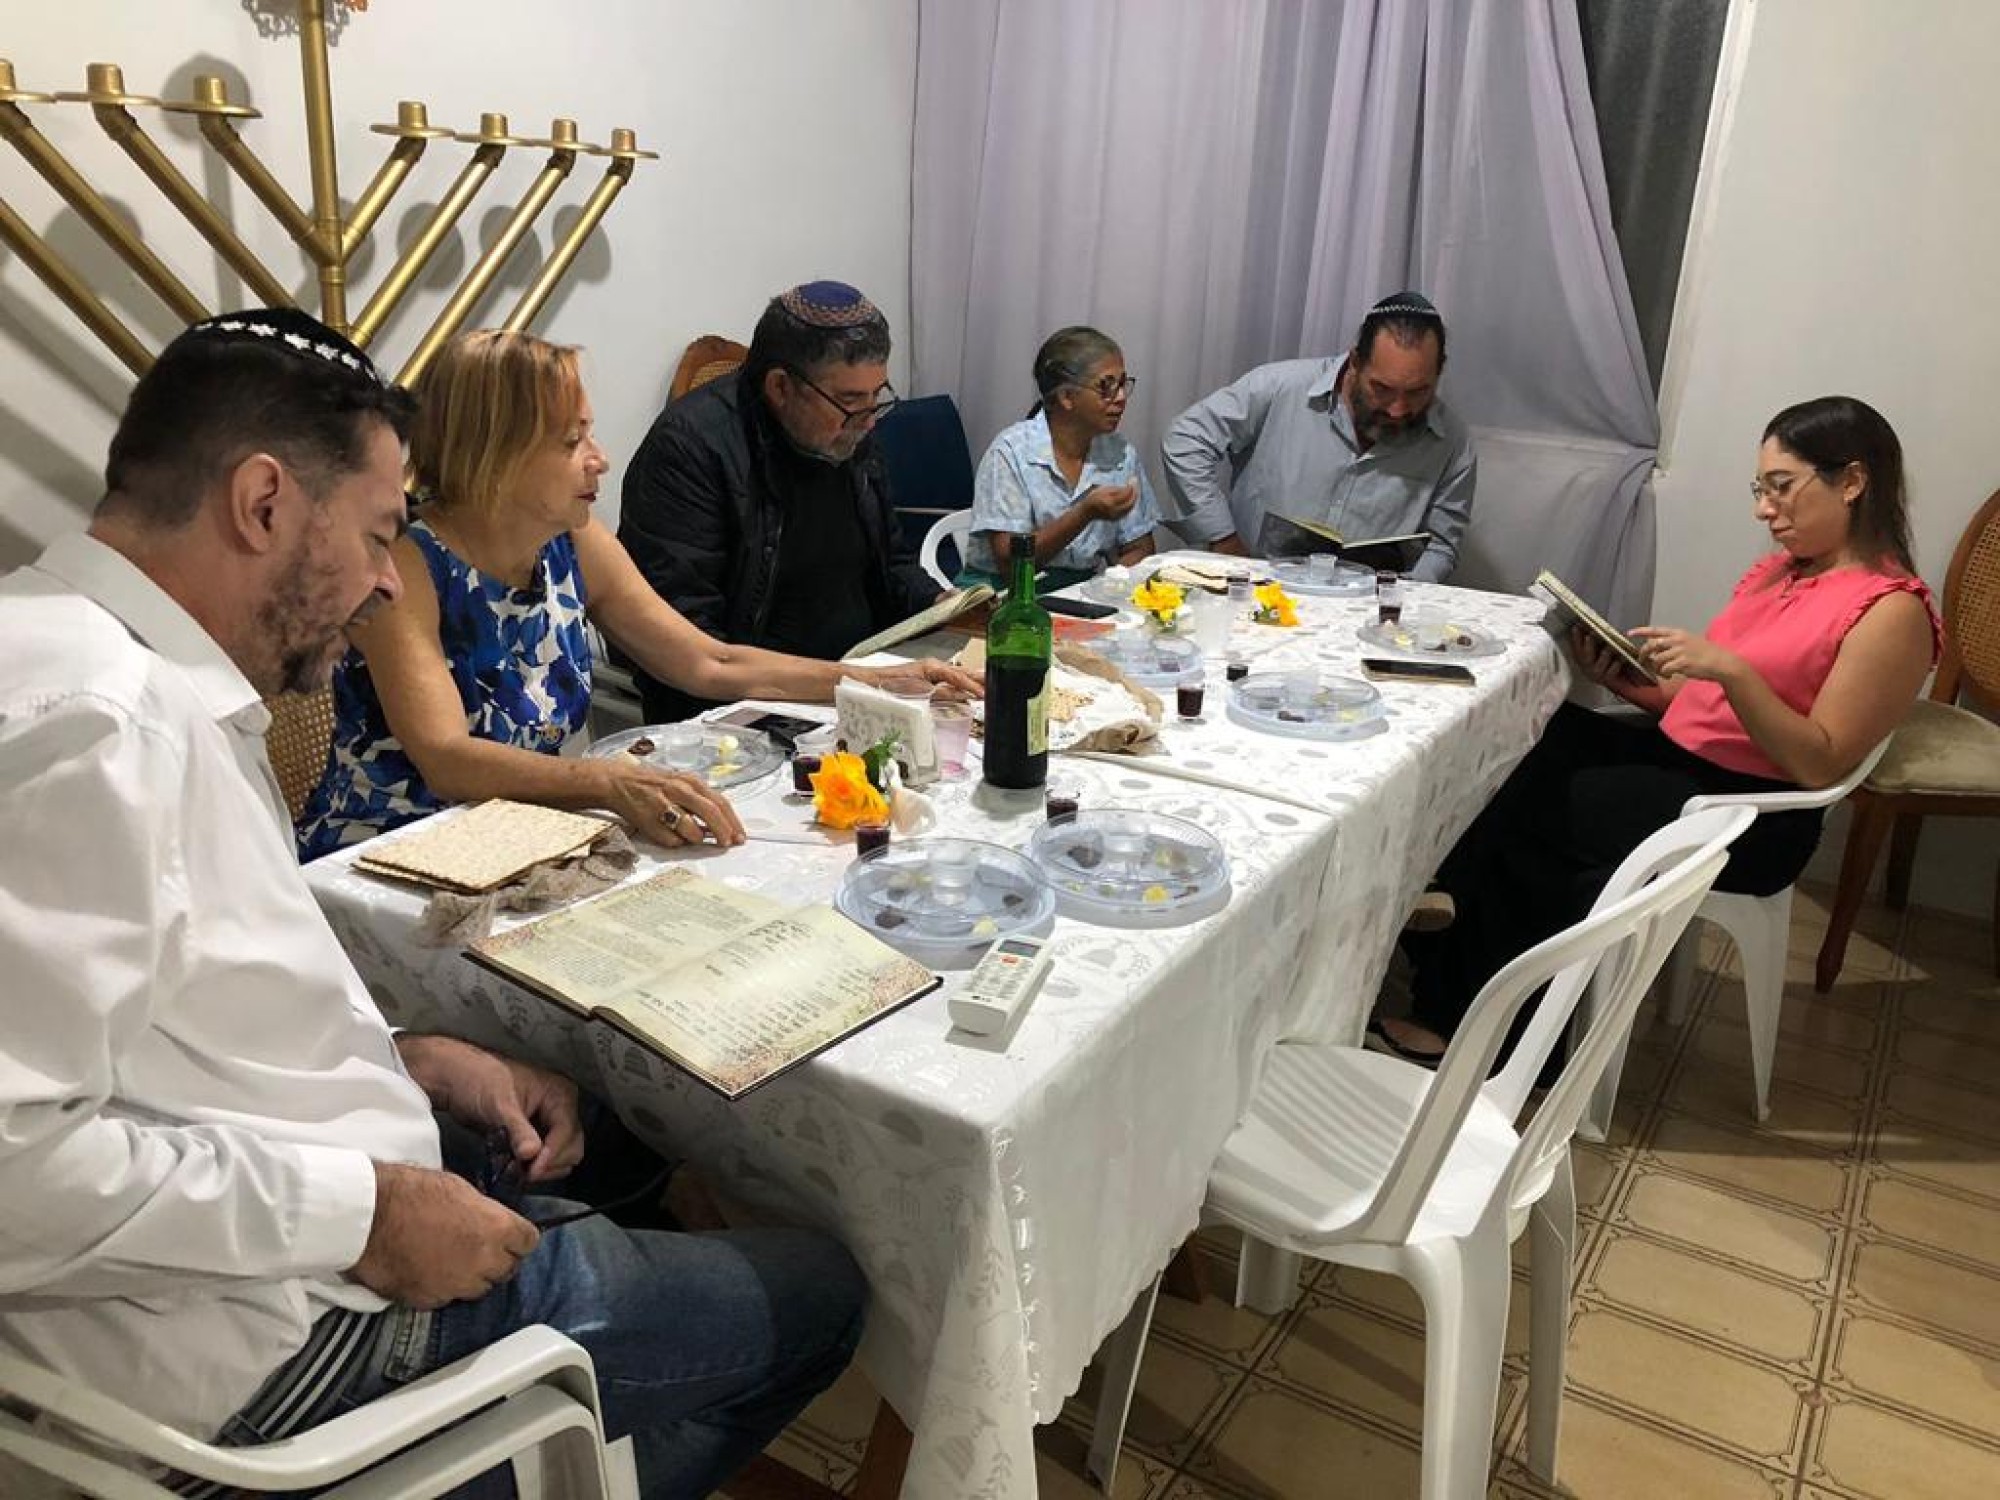 Eventos de Pessach lotam instituições judaicas do País - Fundada em 1948, a CONIB – Confederação Israelita do Brasil é o órgão de representação e coordenação política da comunidade judaica brasileira. 